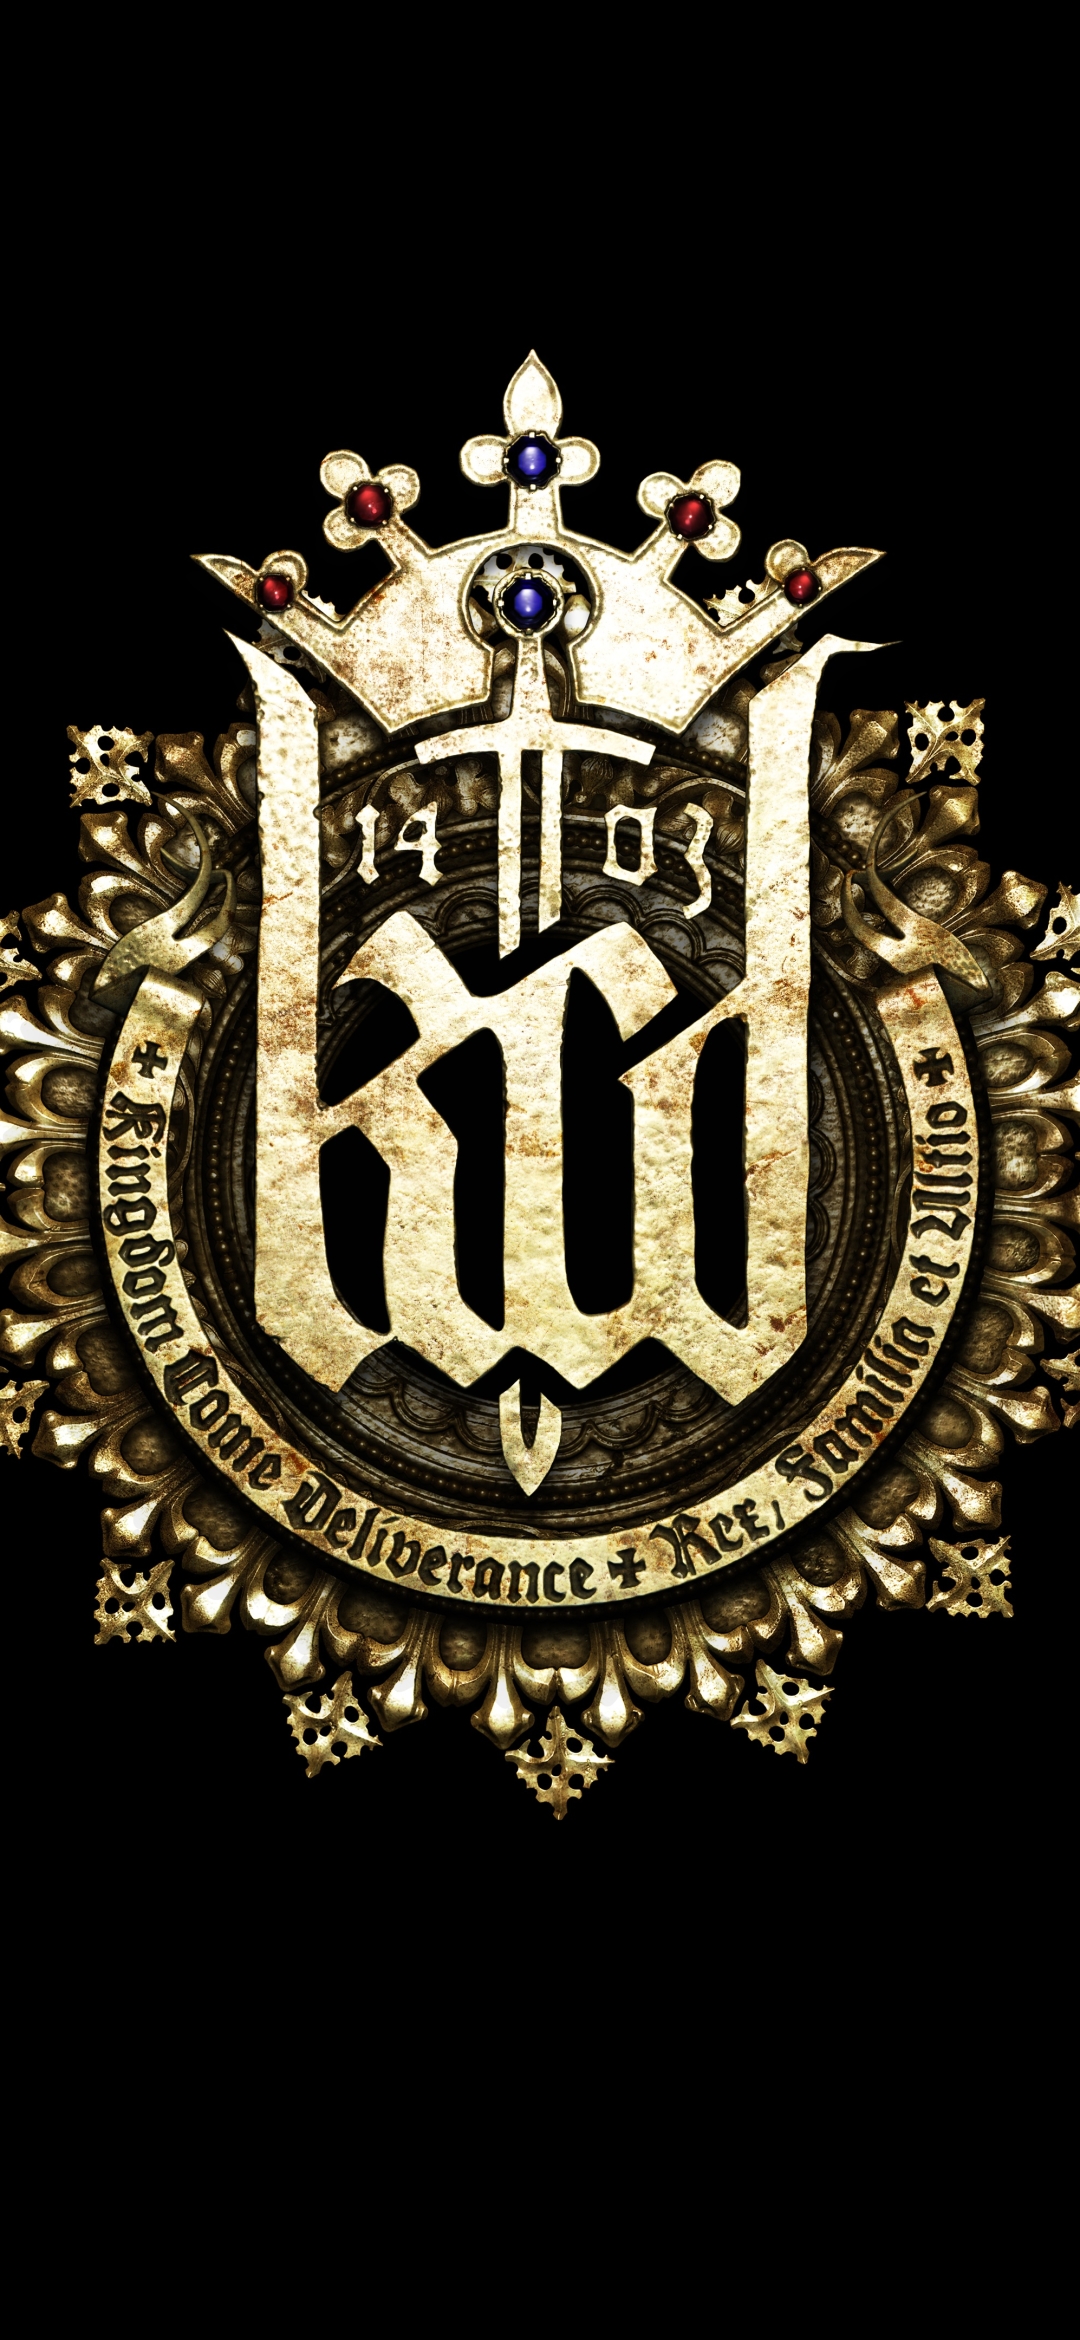 Kingdom Come: Deliverance Phone Wallpaper